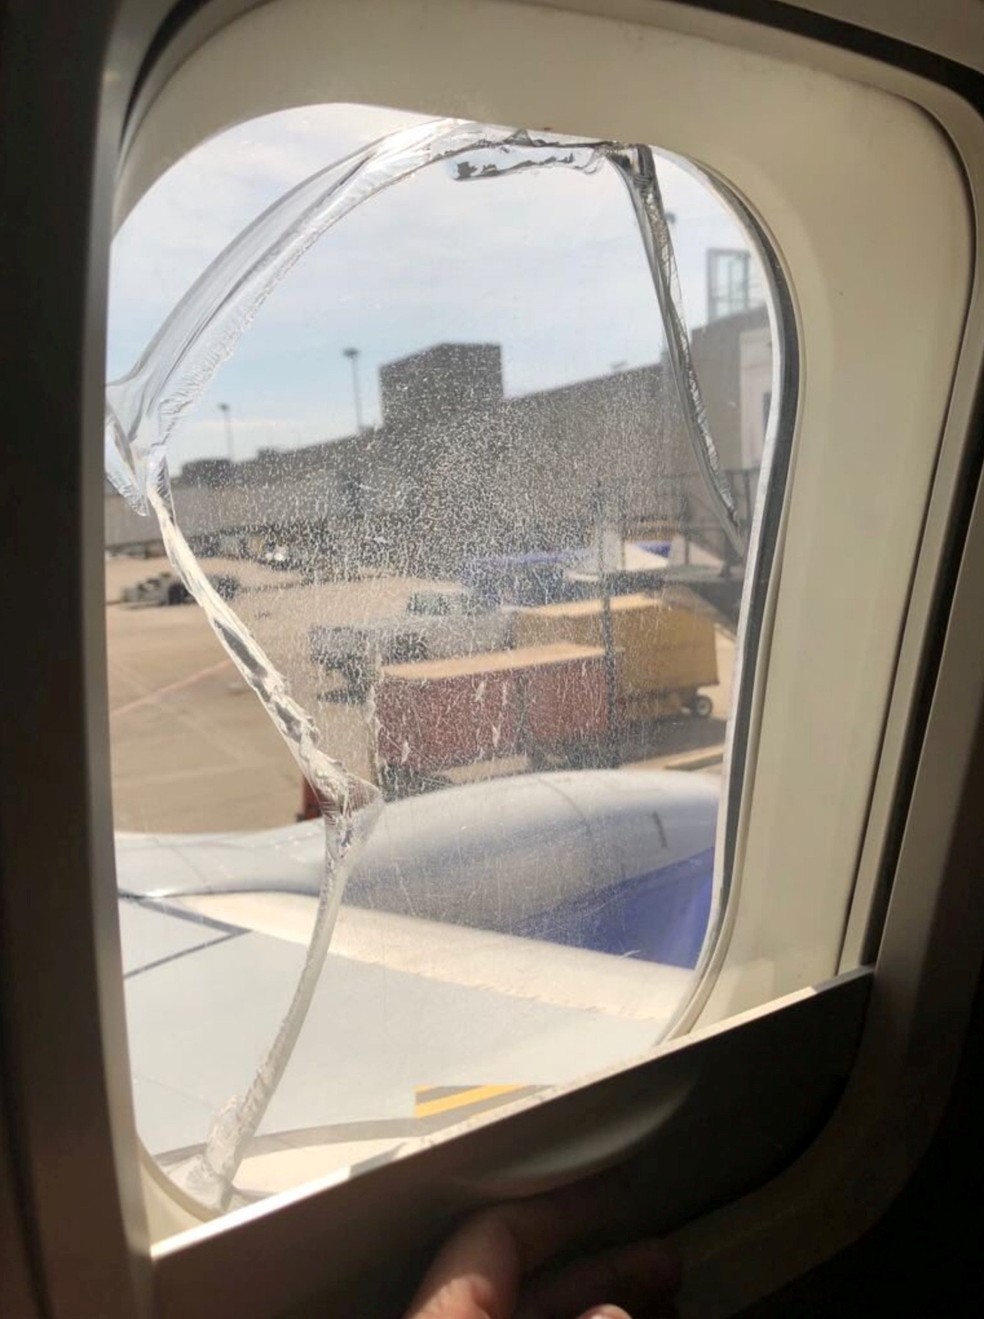 Janela quebrada em voo da Southwest no dia 2 de maio de 2018 (Foto: REUTERS/Social Media )